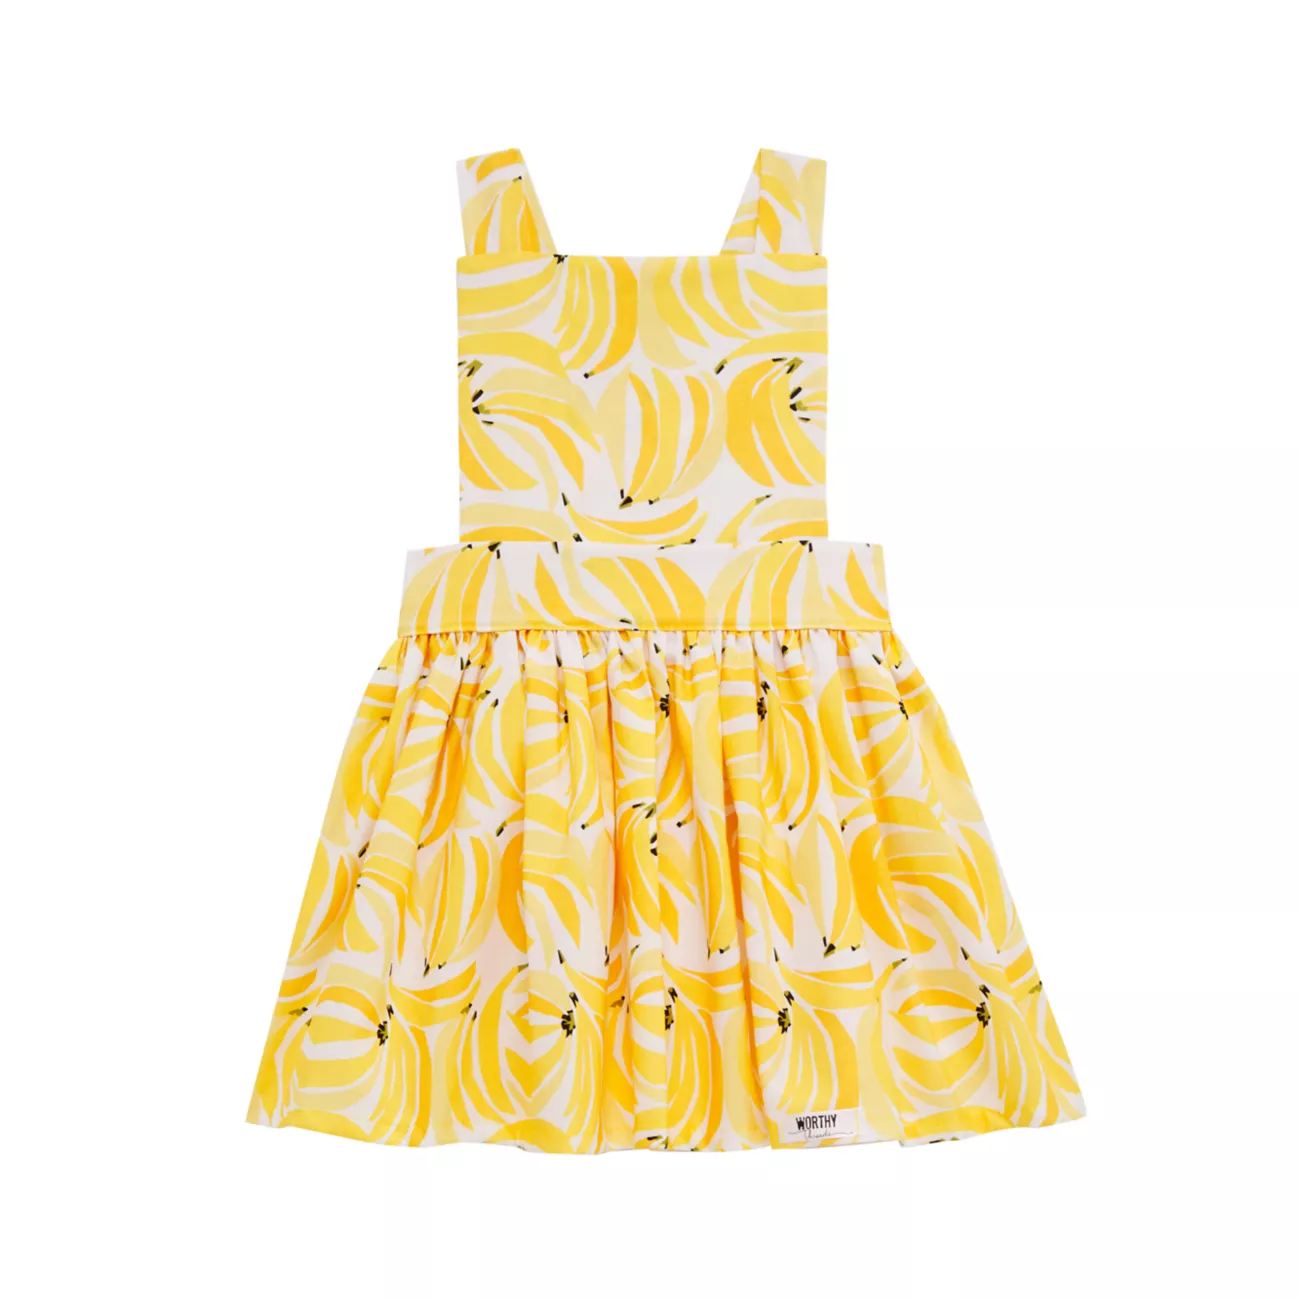 Хлопковое платье-сарафан бананового цвета для маленькой девочки Worthy Threads